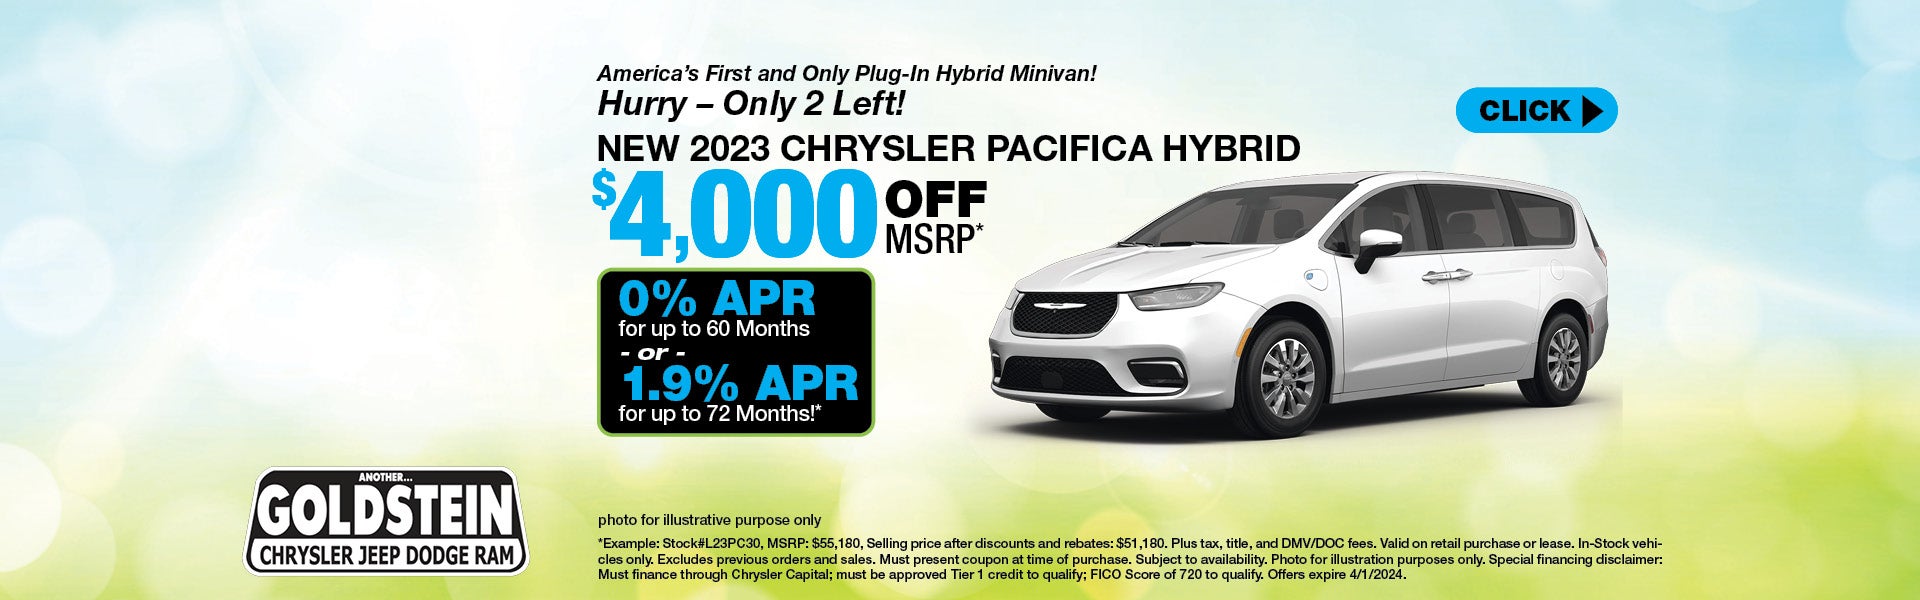 2023 Chrysler Pacifica Hybrid 